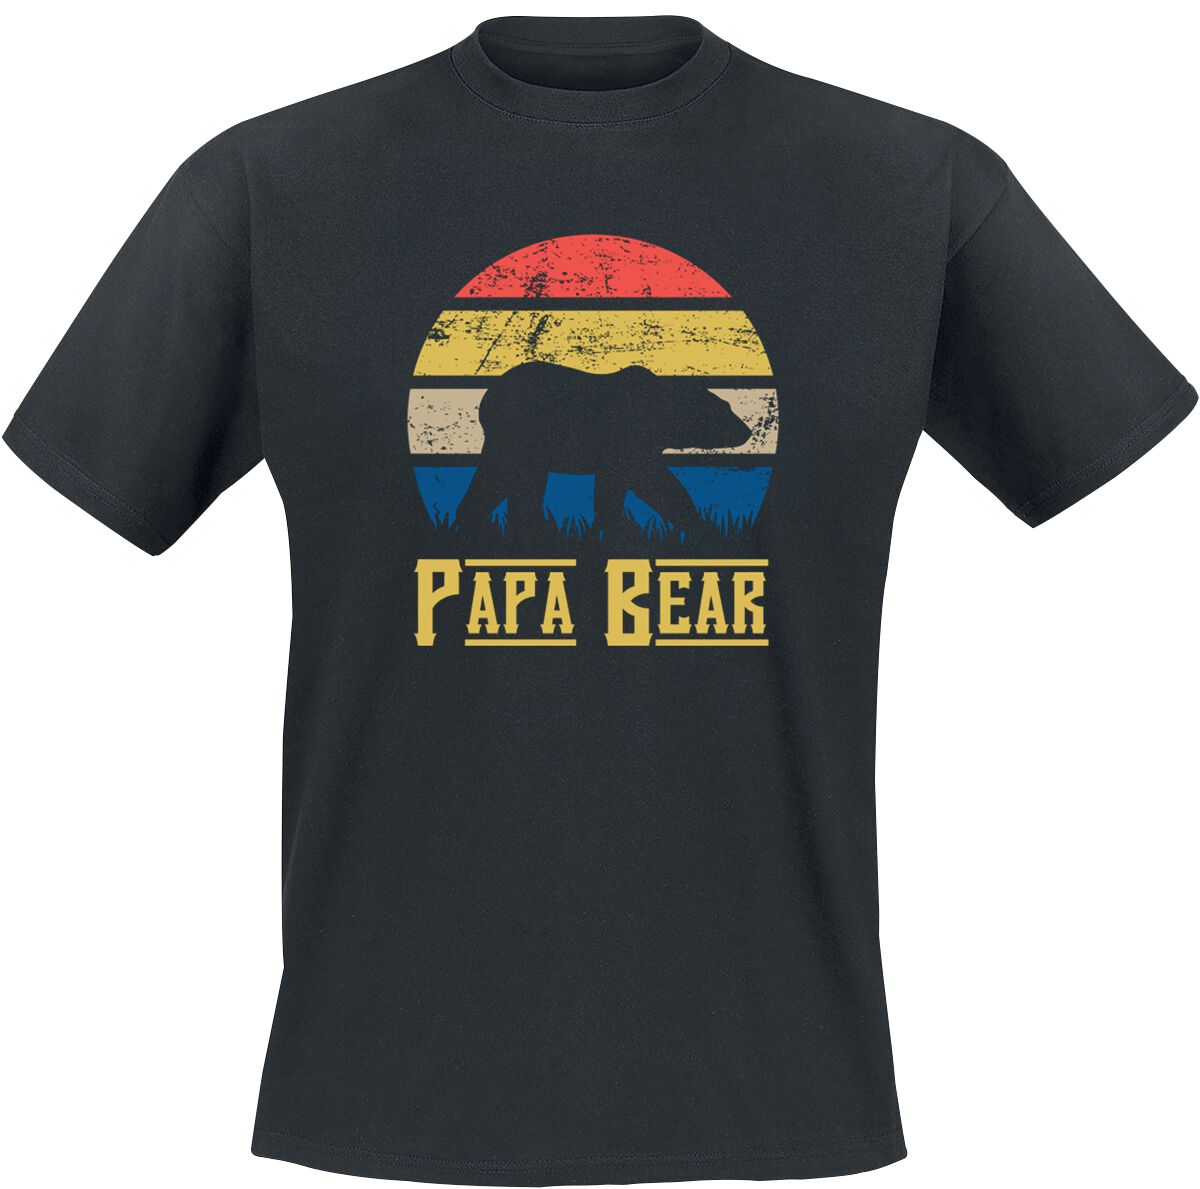 Familie & Freunde T-Shirt - Papa Bear - S bis 5XL - für Männer - Größe M - schwarz